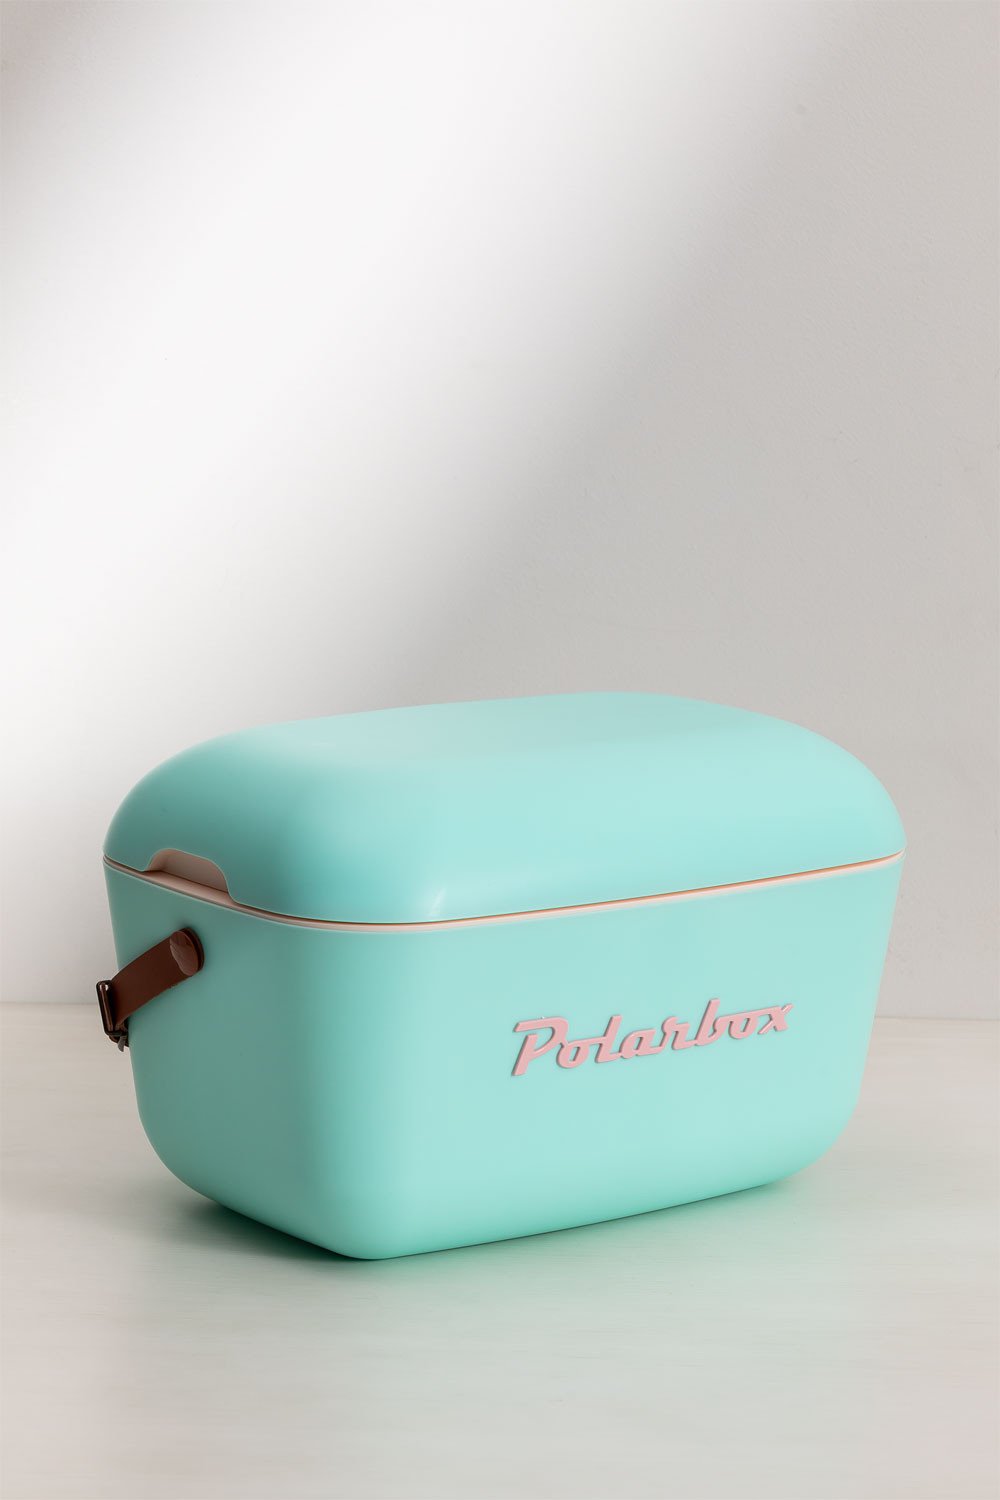 Polarbox Kühlbox Pastellgrün 20 Liter kaufen? Bei